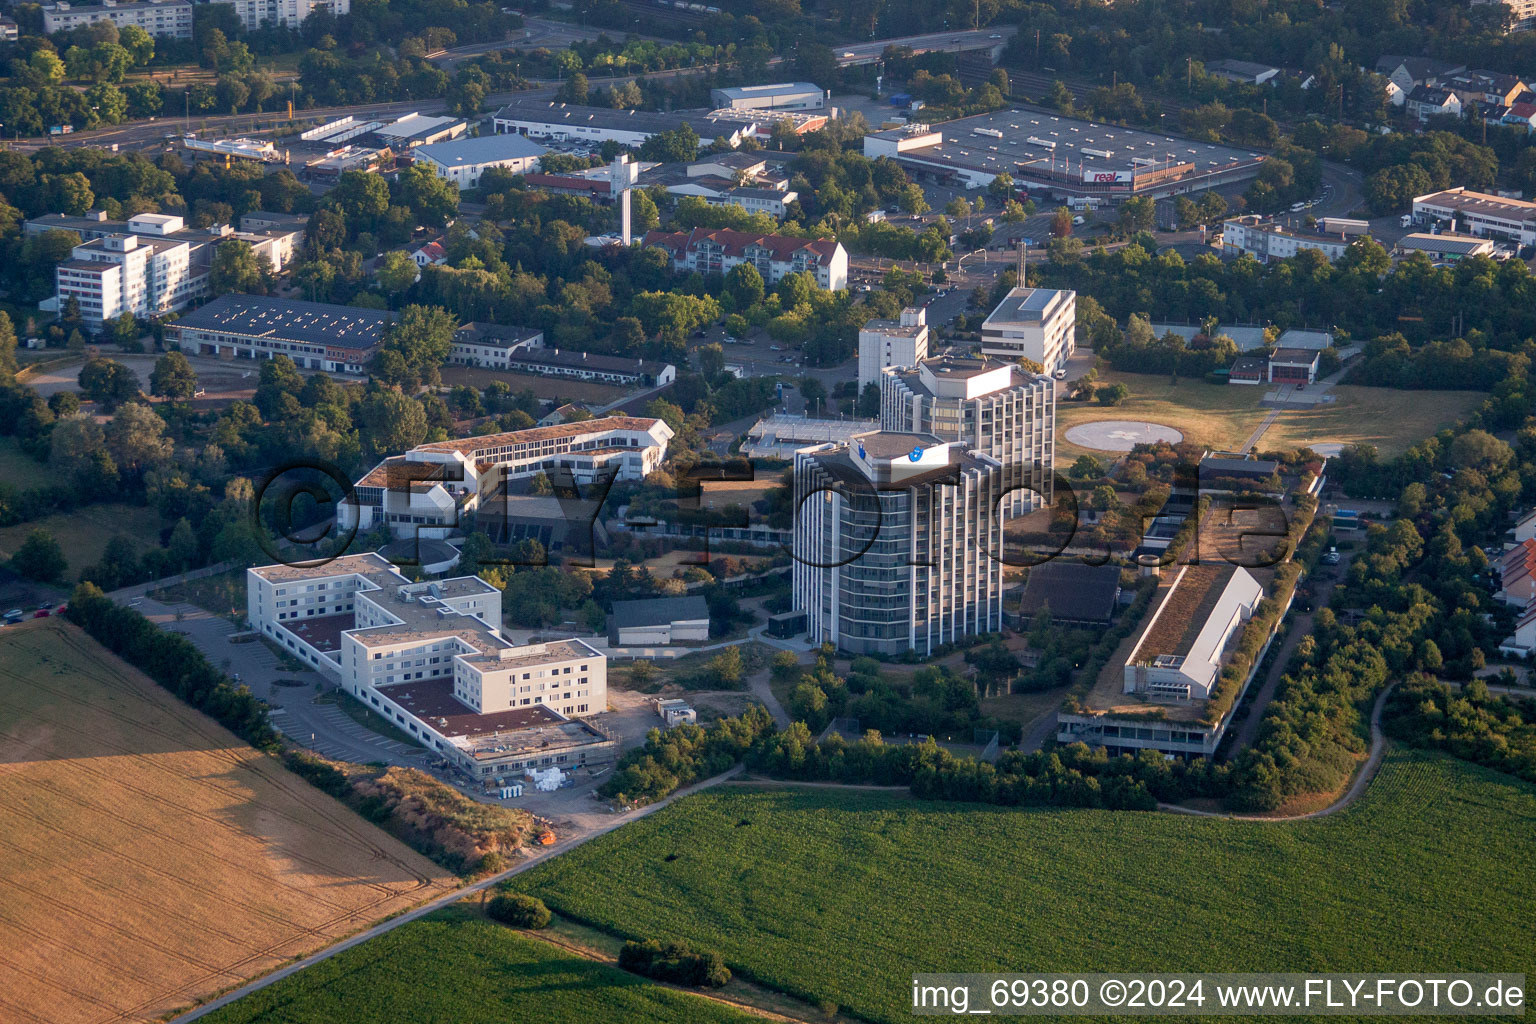 Klinikgelände des Krankenhauses BG Klinik Ludwigshafen in Ludwigshafen am Rhein im Ortsteil Oggersheim im Bundesland Rheinland-Pfalz, Deutschland aus der Luft betrachtet